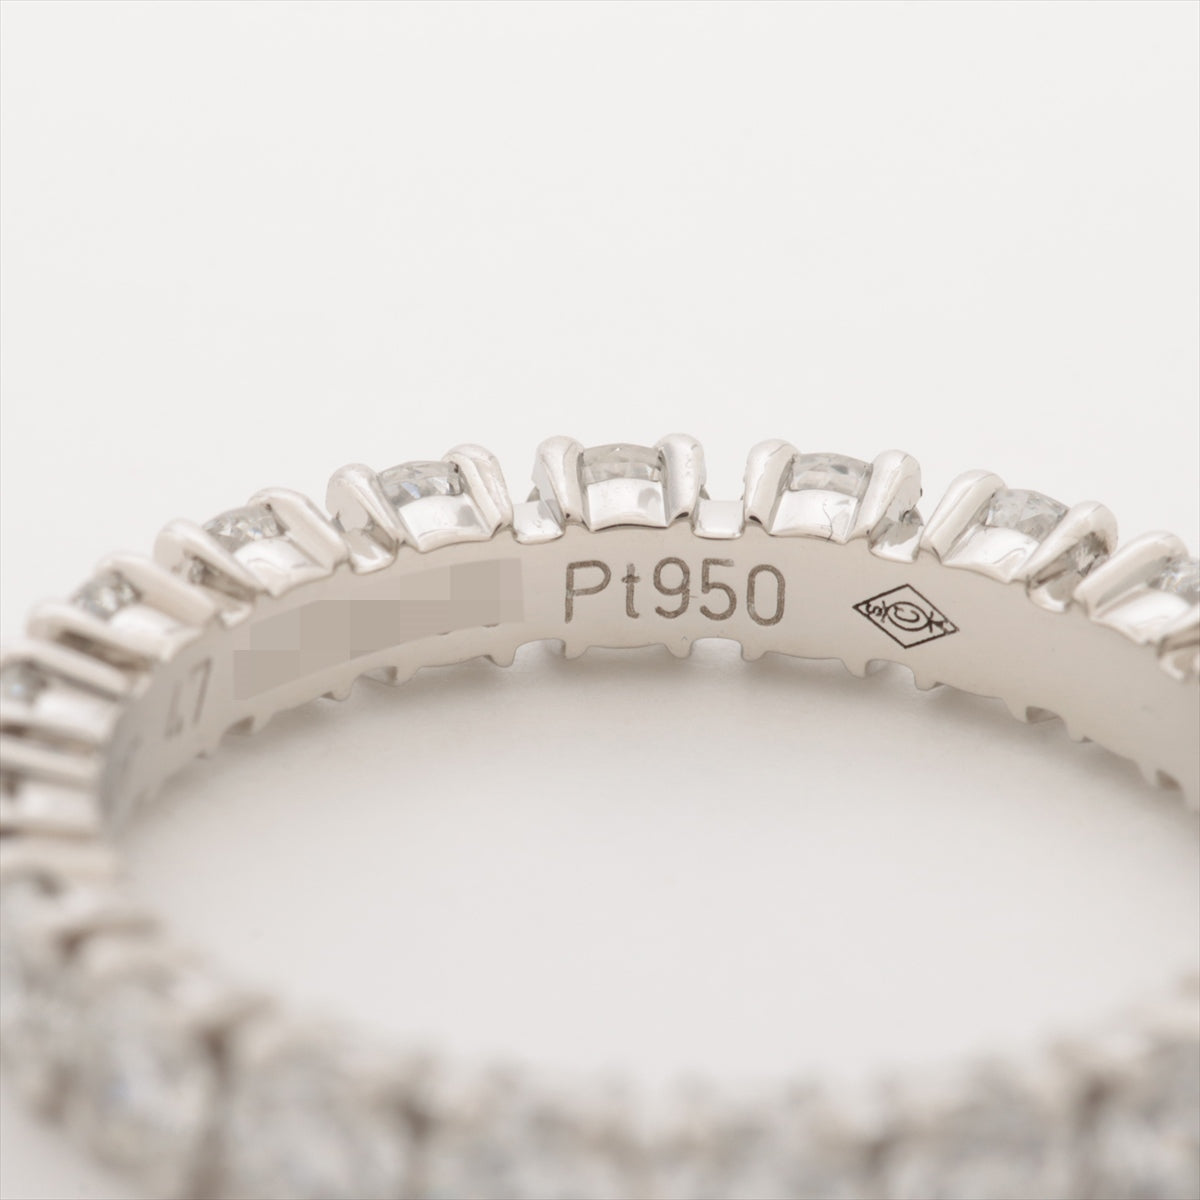 Cartier Destiné Full Eternity Diamond Ring Pt950 2.5g 47